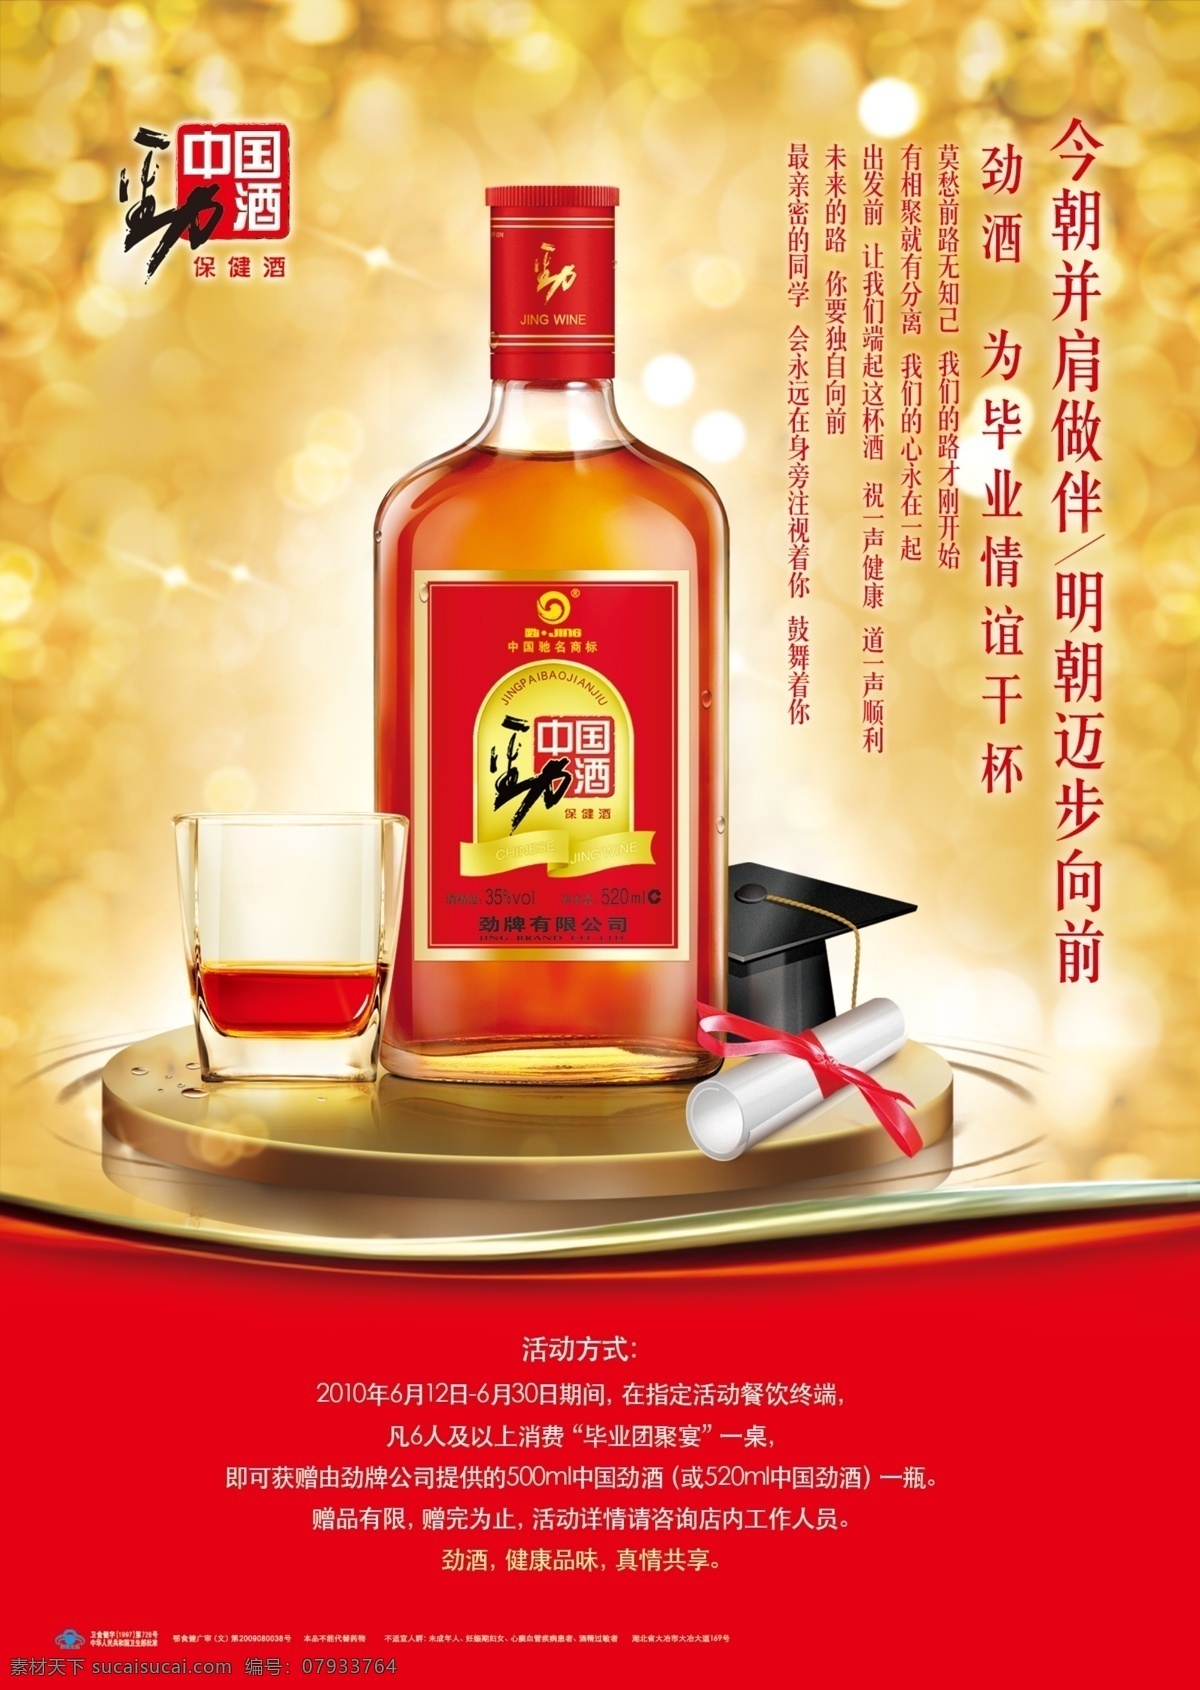 中国劲酒 劲酒 同学聚会 健康酒 酒瓶 酒杯 学士帽 健康饮酒 广告设计模板 源文件